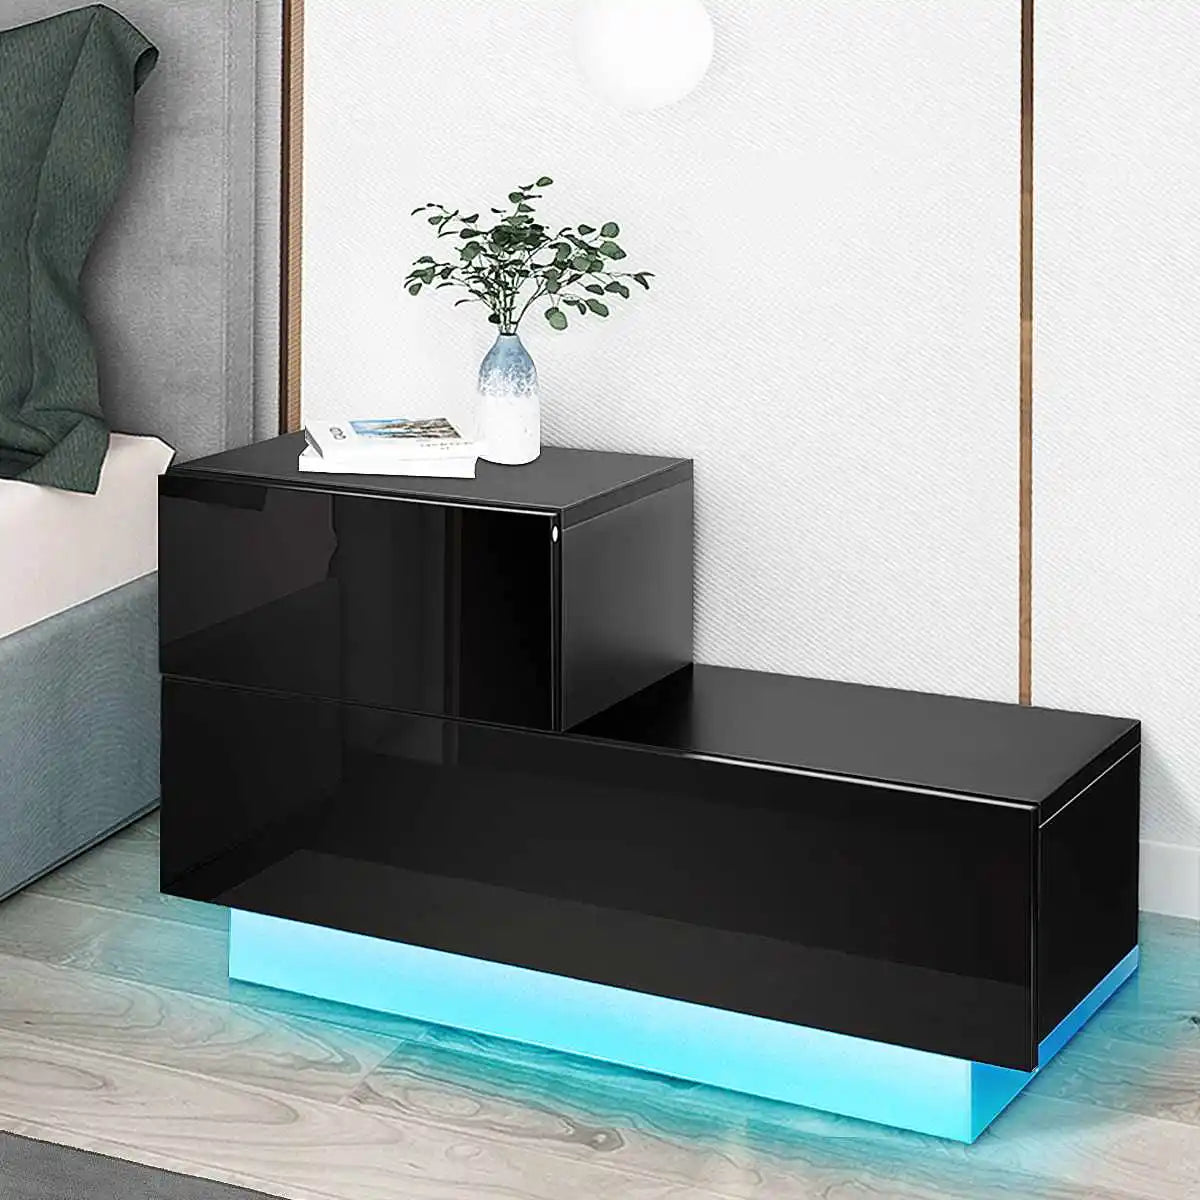 Luxury LED Nightstand Bedside Cabinet Bedside Table of 2 Drawers Coffee Table Bedside Table Nights Stands Home Bedroom Furniture